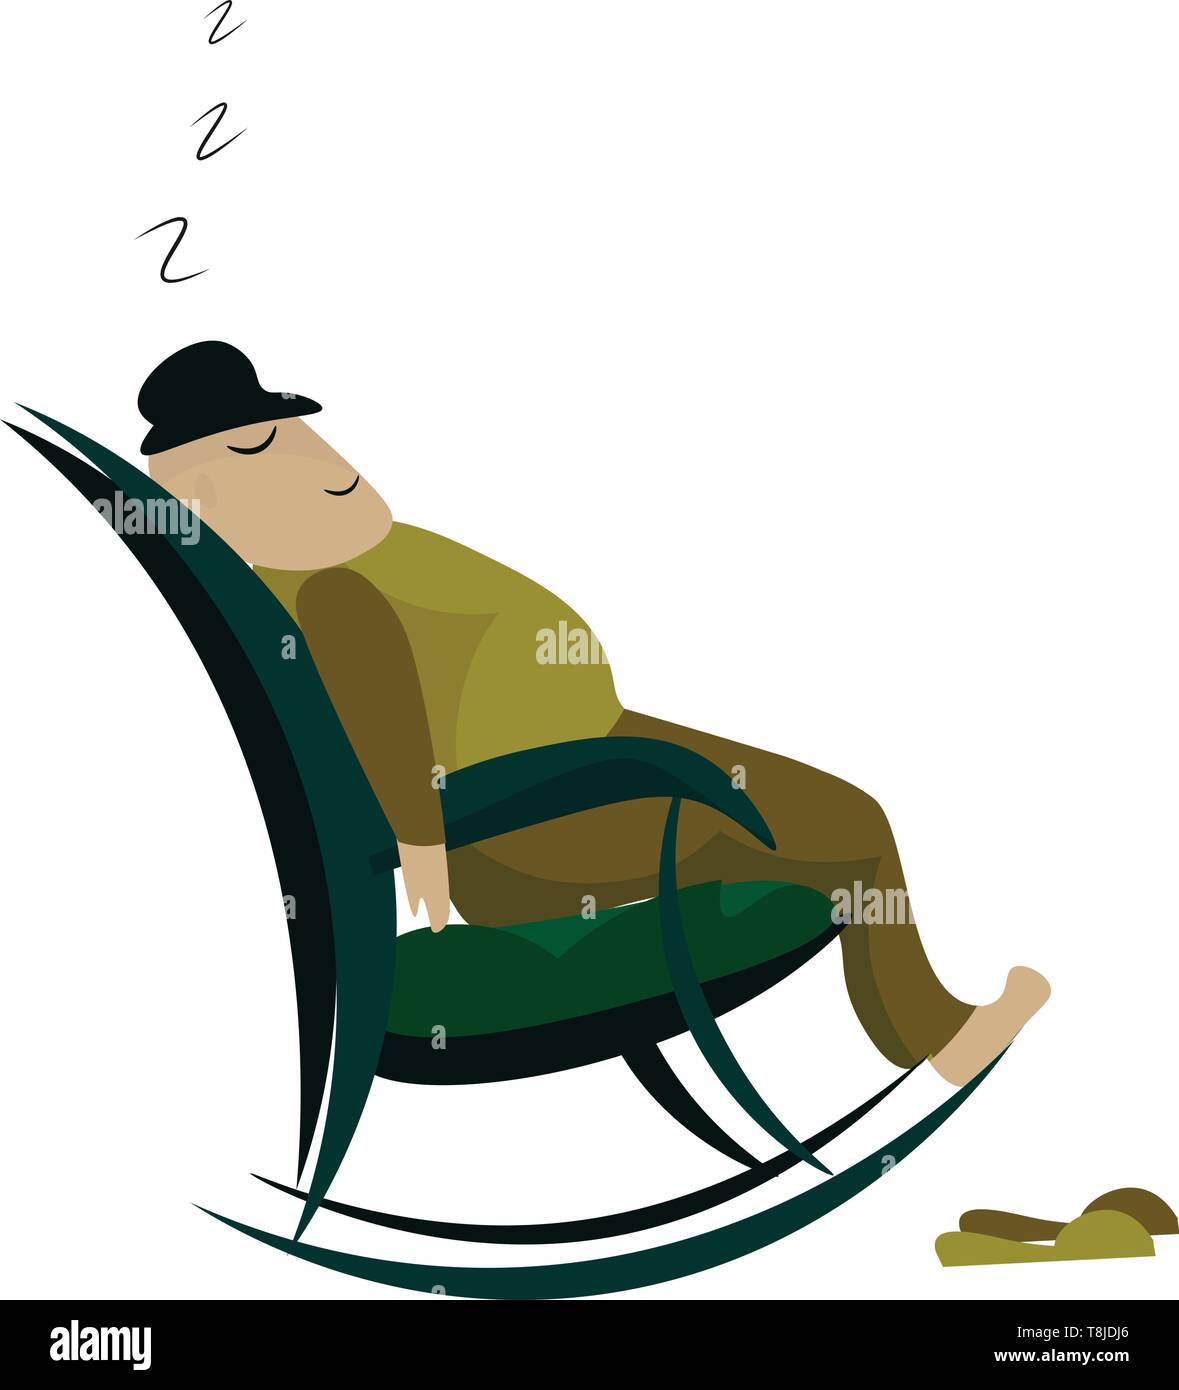 Ein Mann ein Nickerchen auf einem grünen Schaukelstuhl, Vector, Farbe, Zeichnung oder Abbildung. Stock Vektor